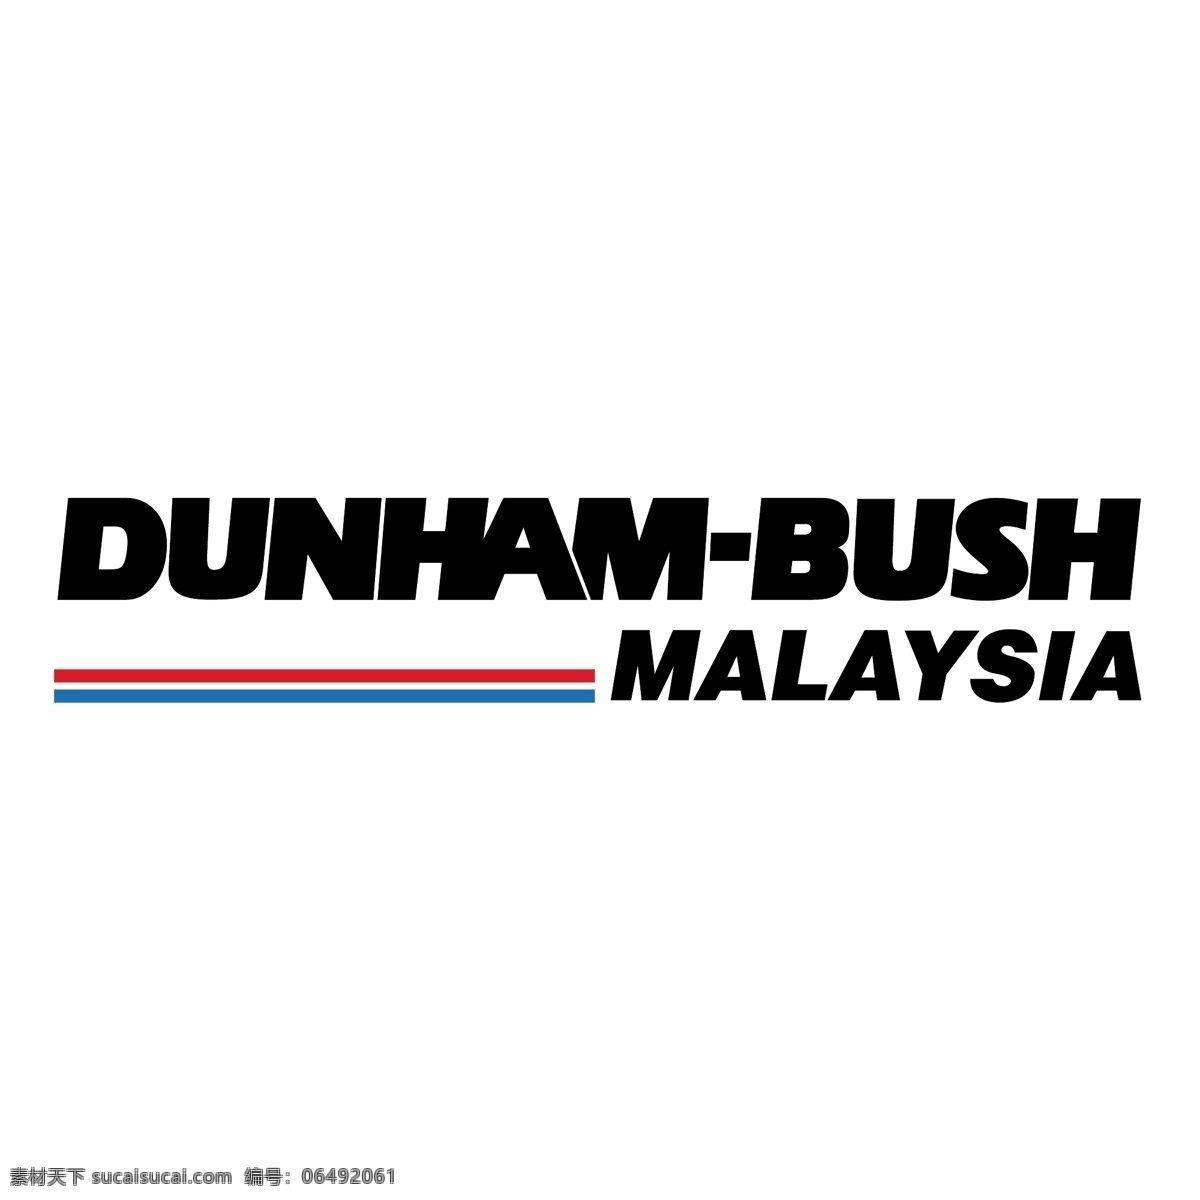 马来西亚 顿 汉 布什 邓纳姆 顿汉布什 矢量顿汉布什 标志 矢量 顿汉布什标志 艺术 自由 布什自由 布什矢量图形 免费矢量布什 布什自由矢量 建筑家居